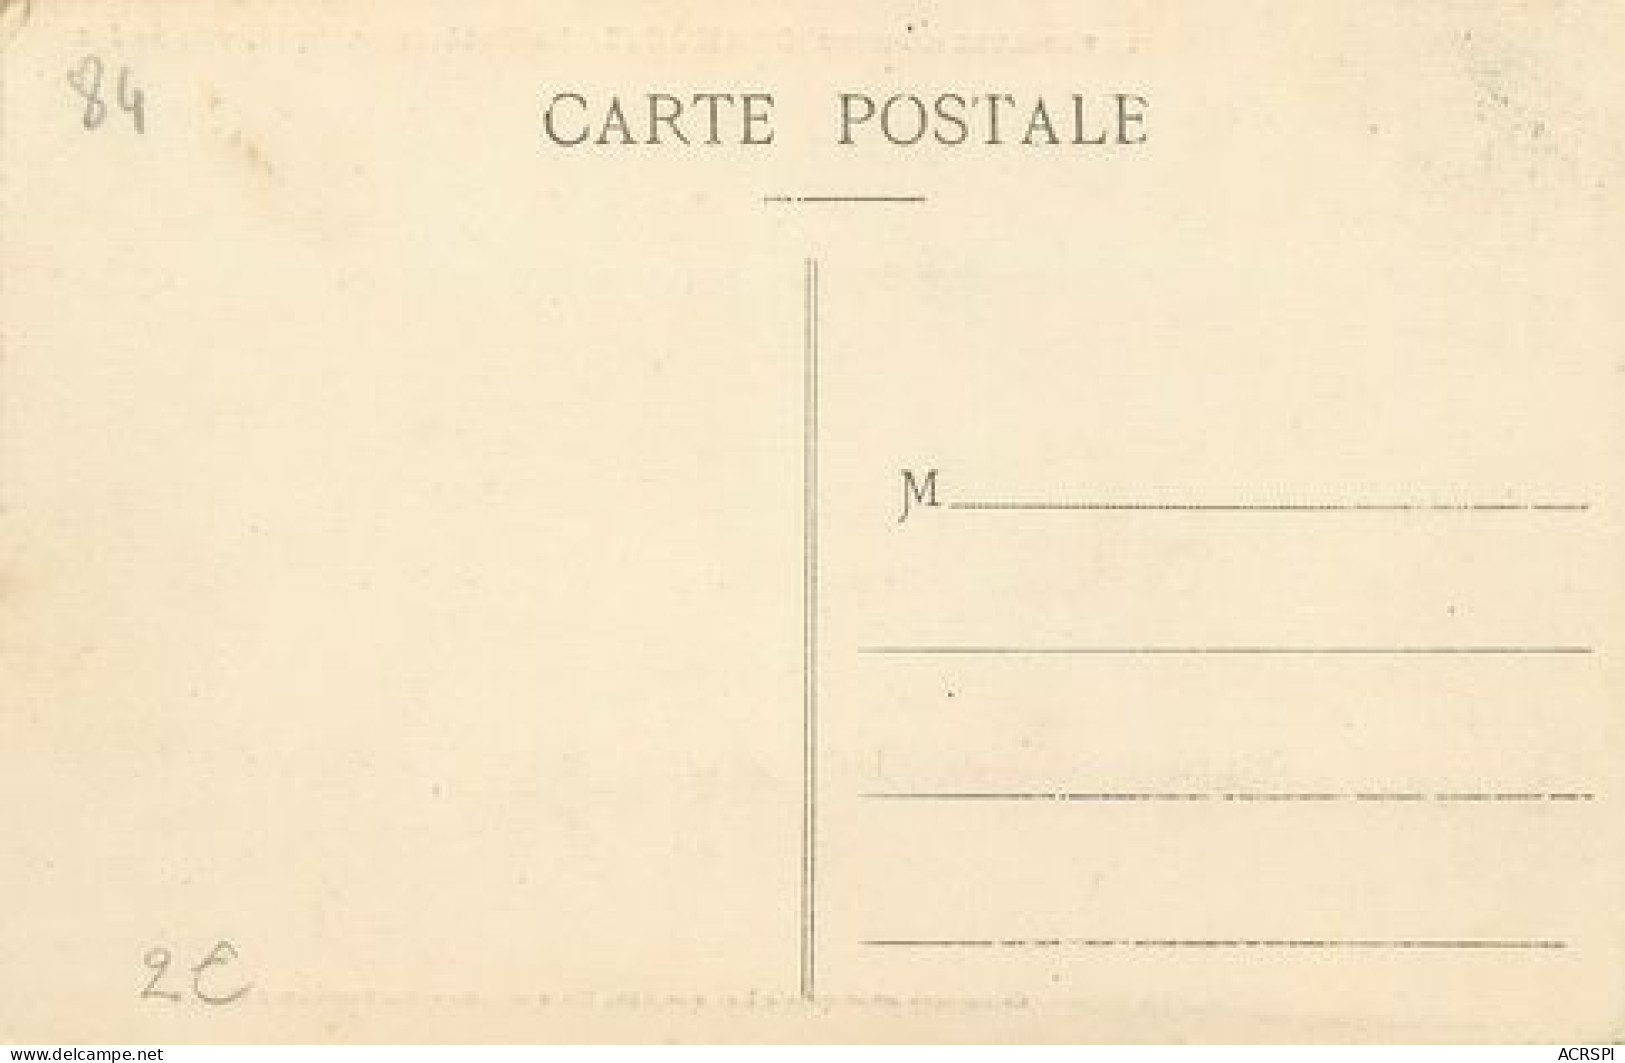 ORANGE lot de 22 cartes anciennes de la facade romaine du monument differents éditeurs  (scan recto-verso)MA2143BisBoite